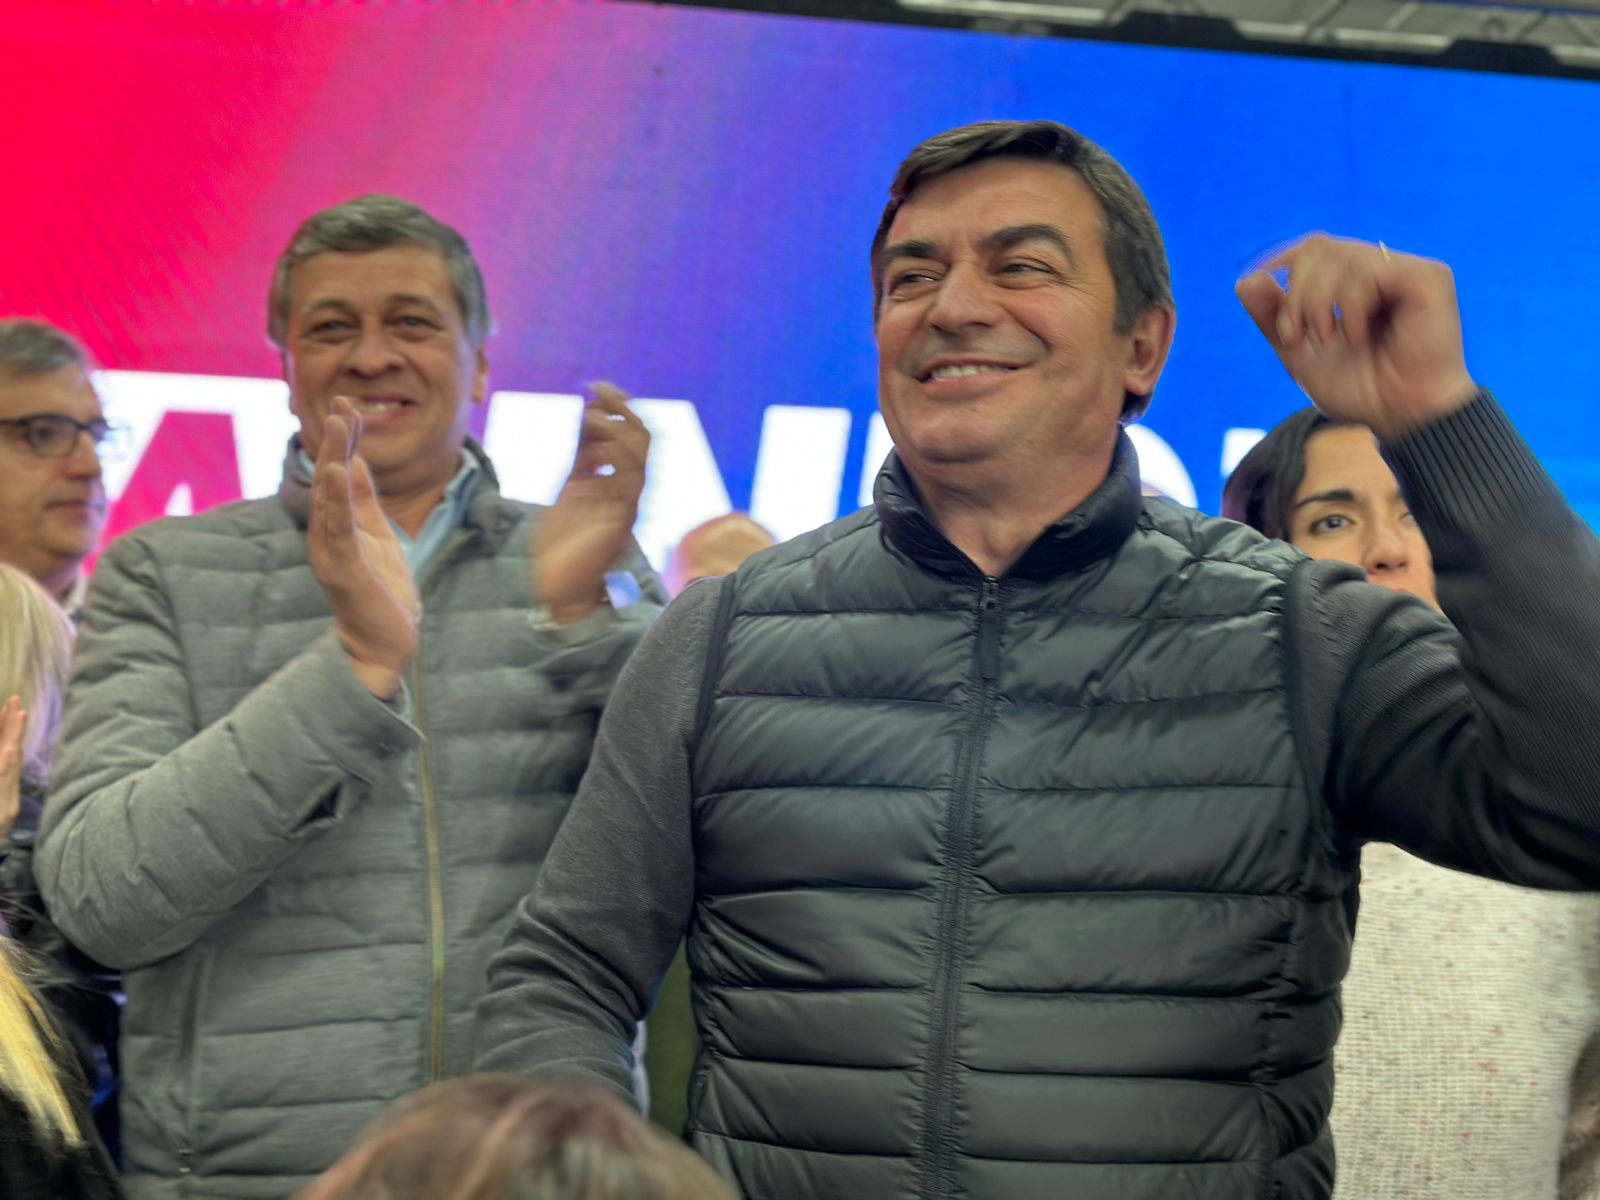 Omar De Marchi, festejando en el búnker de campaña junto con Daniel Orozco. su compañero de fórmula